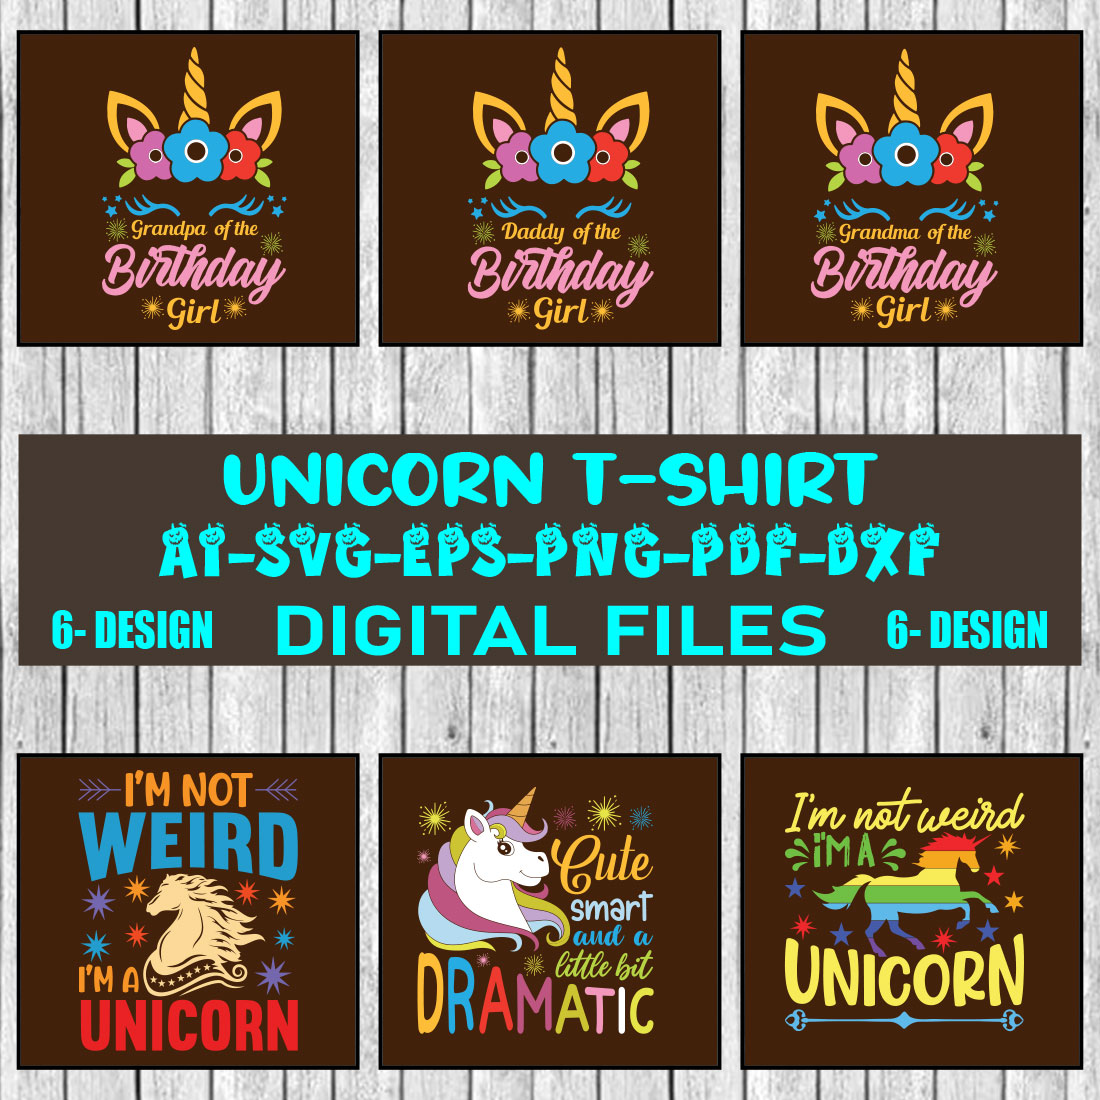 Unicorn T-shirt Design Bundle Vol-2 cover image.